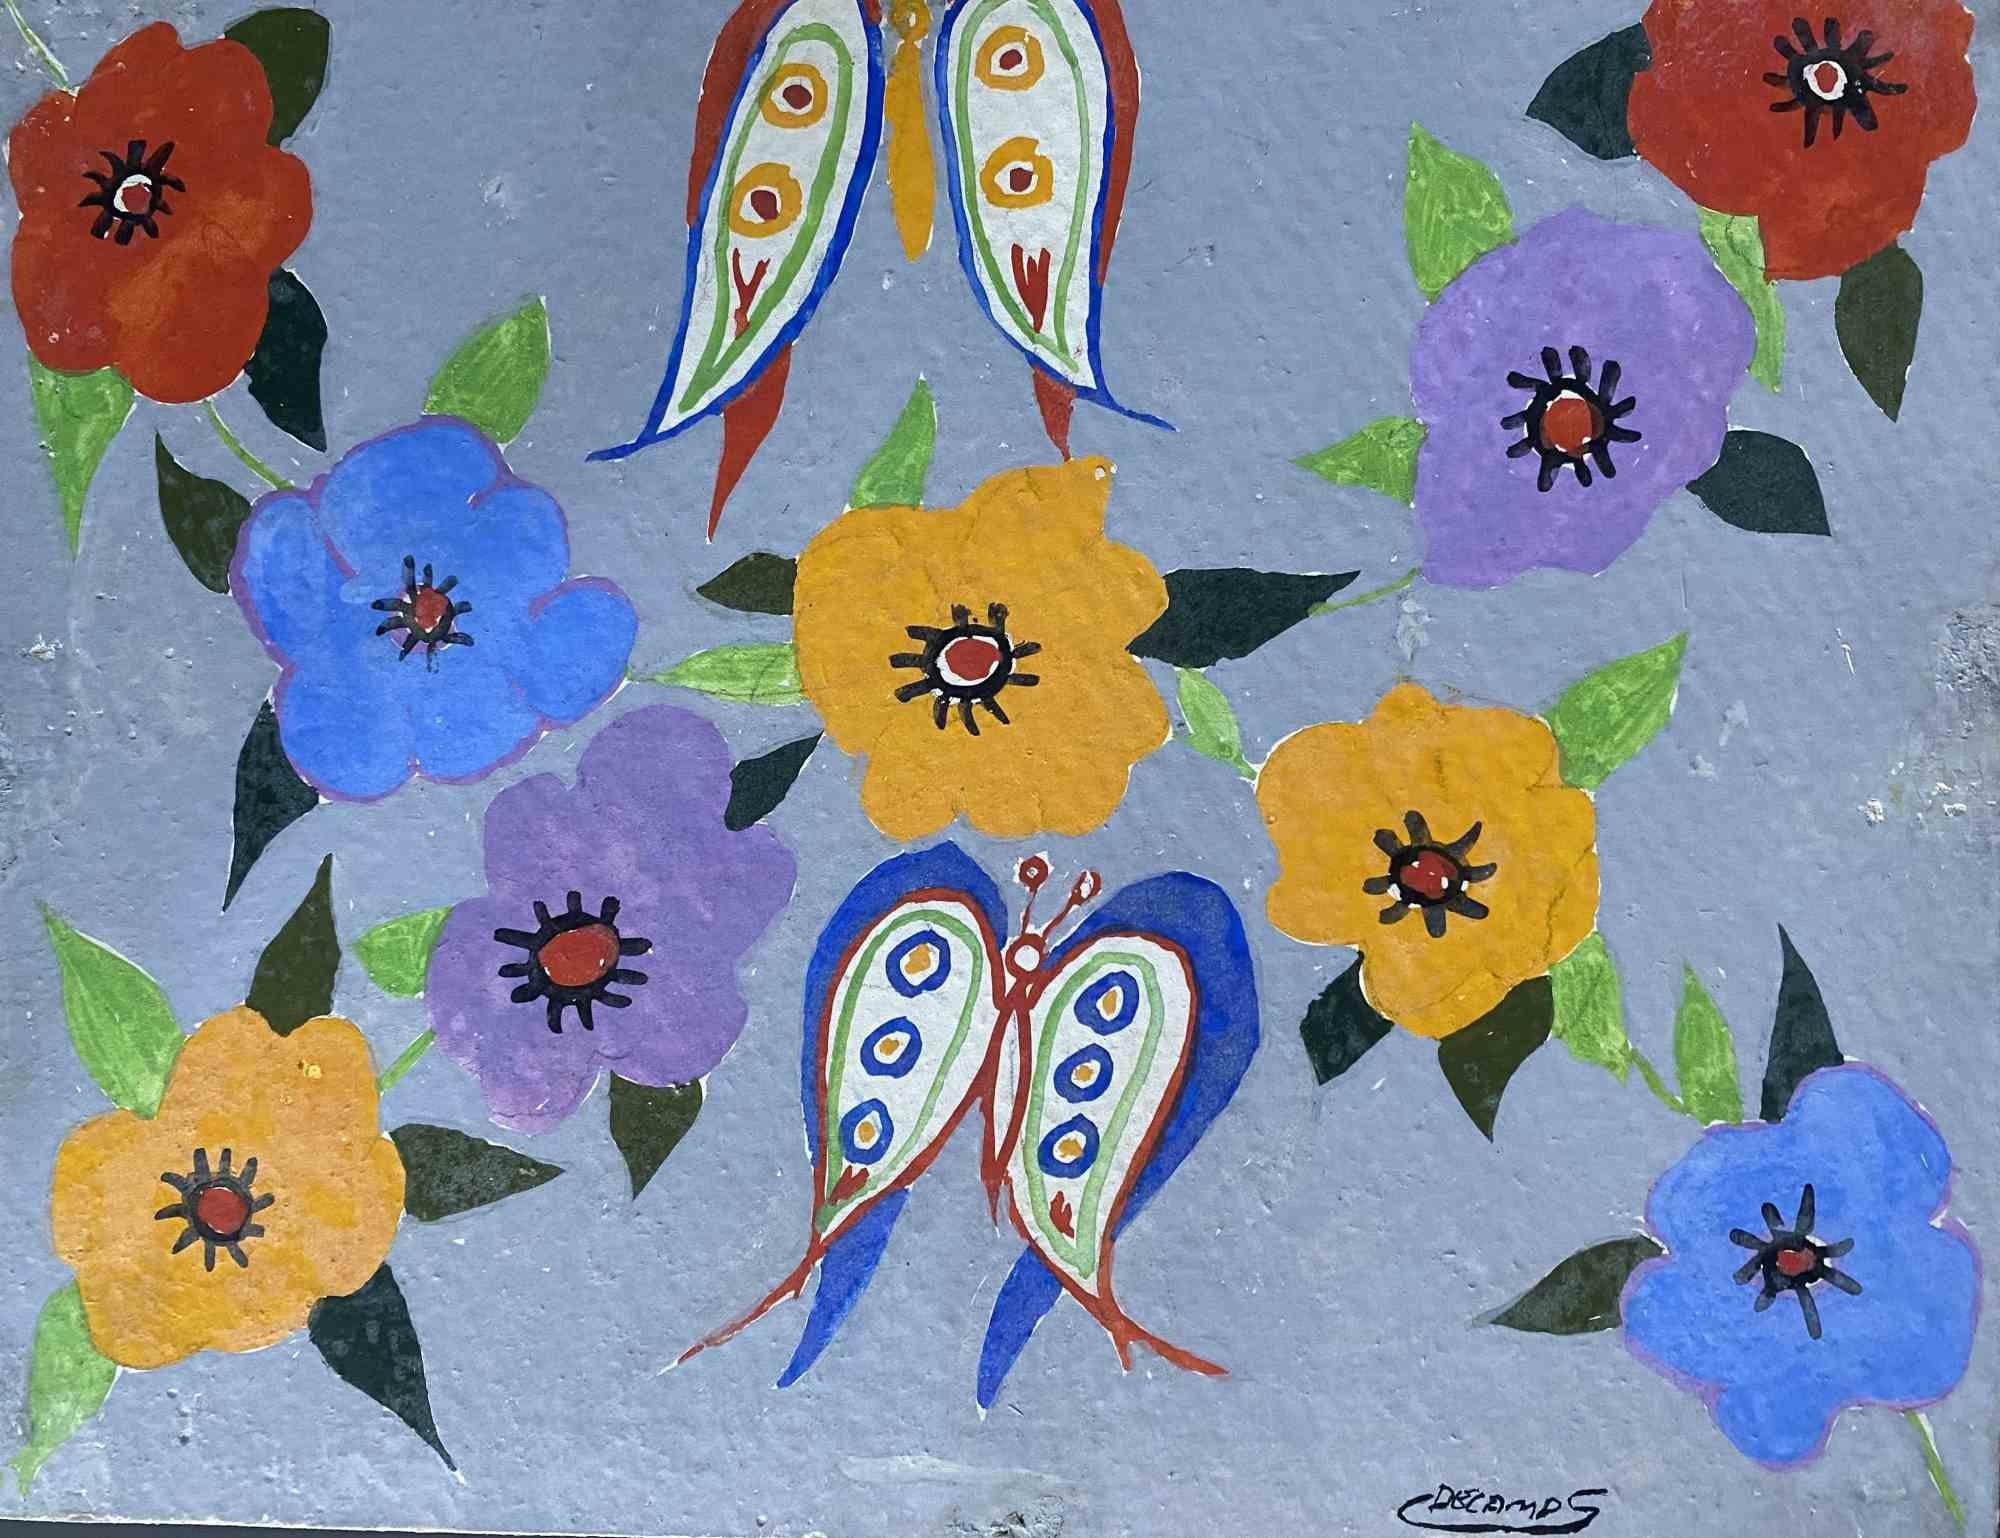 Fleurs avec papillons est une peinture réalisée par Claude Decamps dans les années 1970

Peinture à l'huile sur toile cartonnée.

Signé à la main en bas.

Bonnes conditions.

L'œuvre d'art est représentée par des coups de pinceau doux, avec des